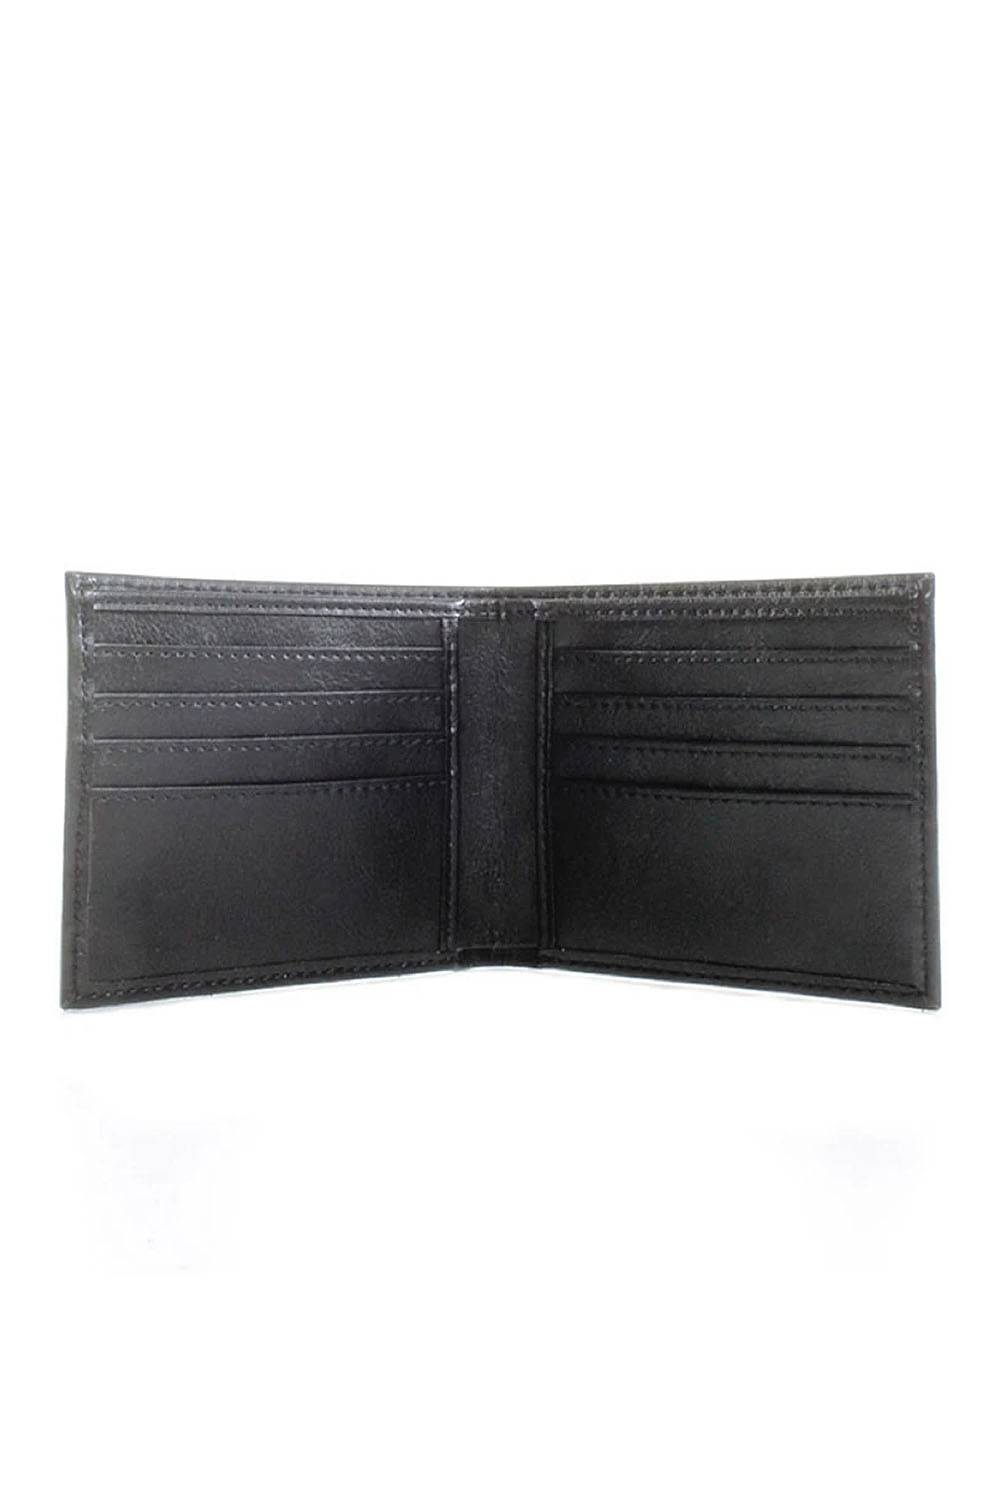 wills vegan leather wallet